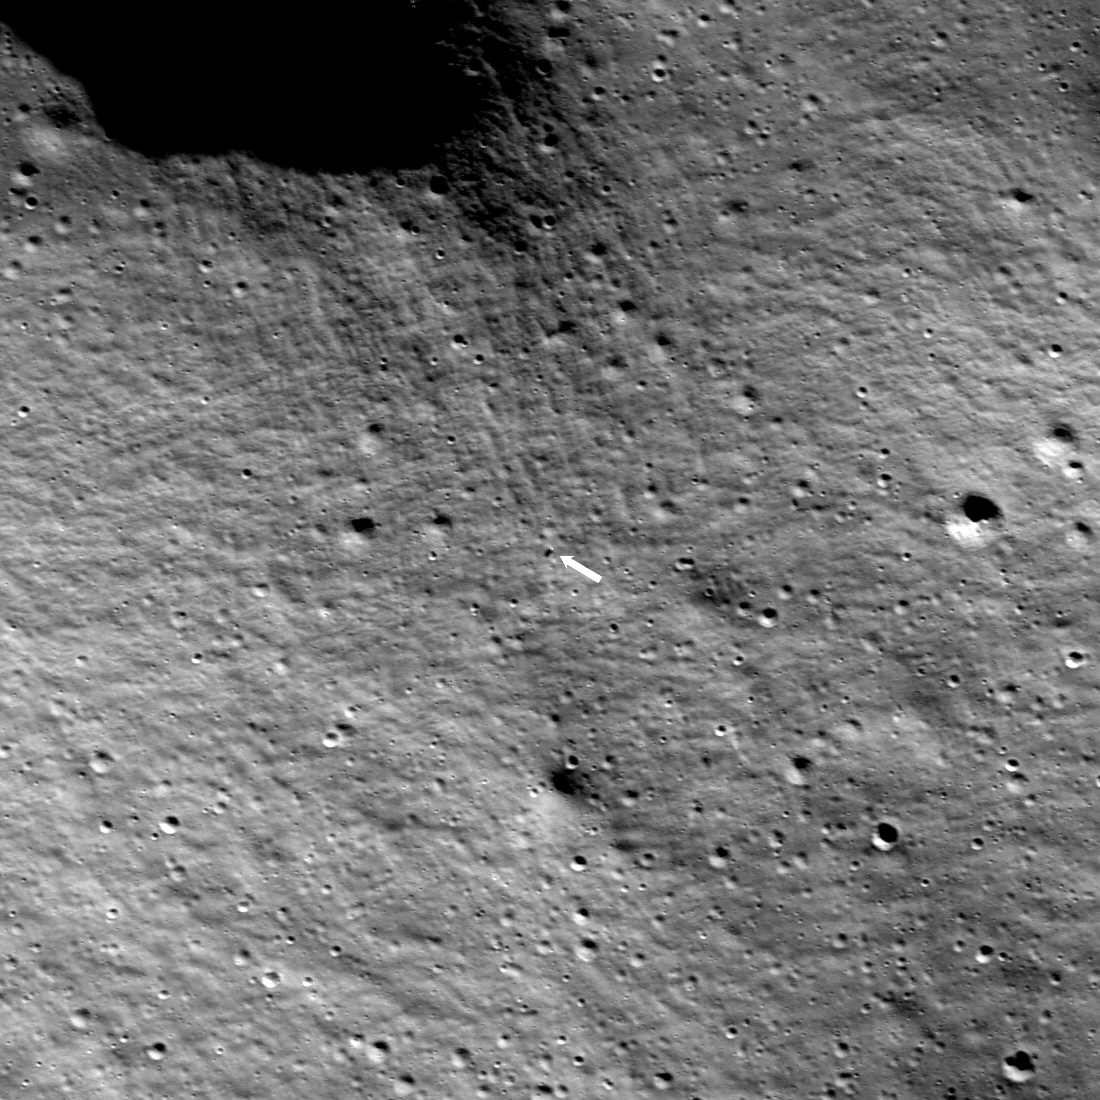 Nova C seen from orbit, 89 cm per pixel